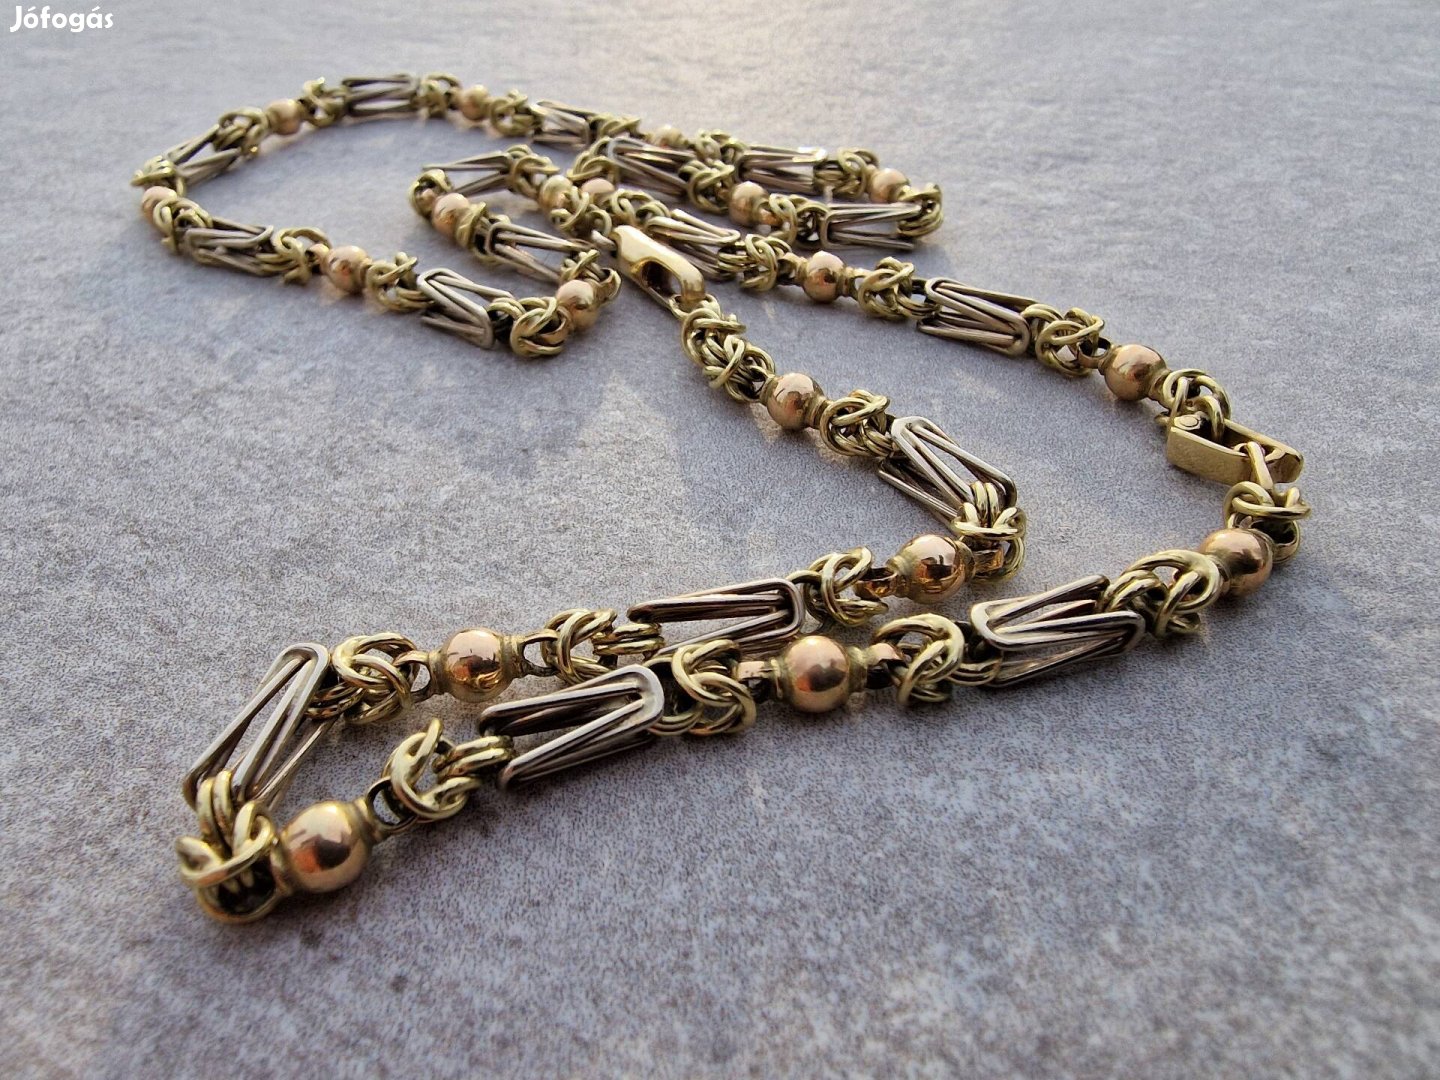 14 karátos, kézi, egyedi készítésű trikolor arany király lánc nyaklánc